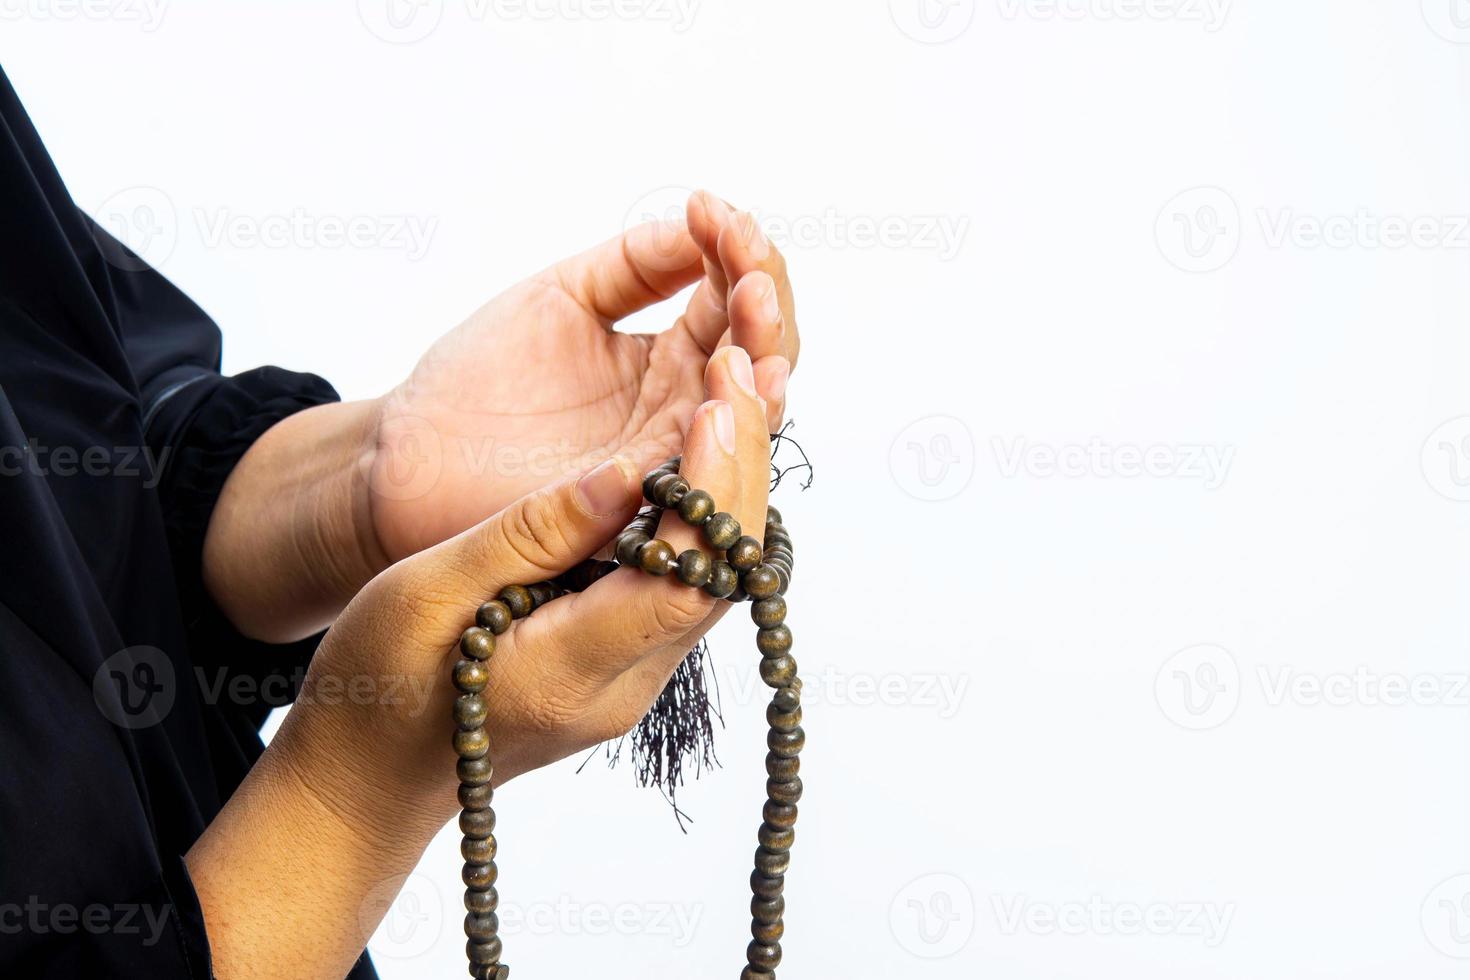 moslimvrouw die bidt voor allah, moslimgod foto